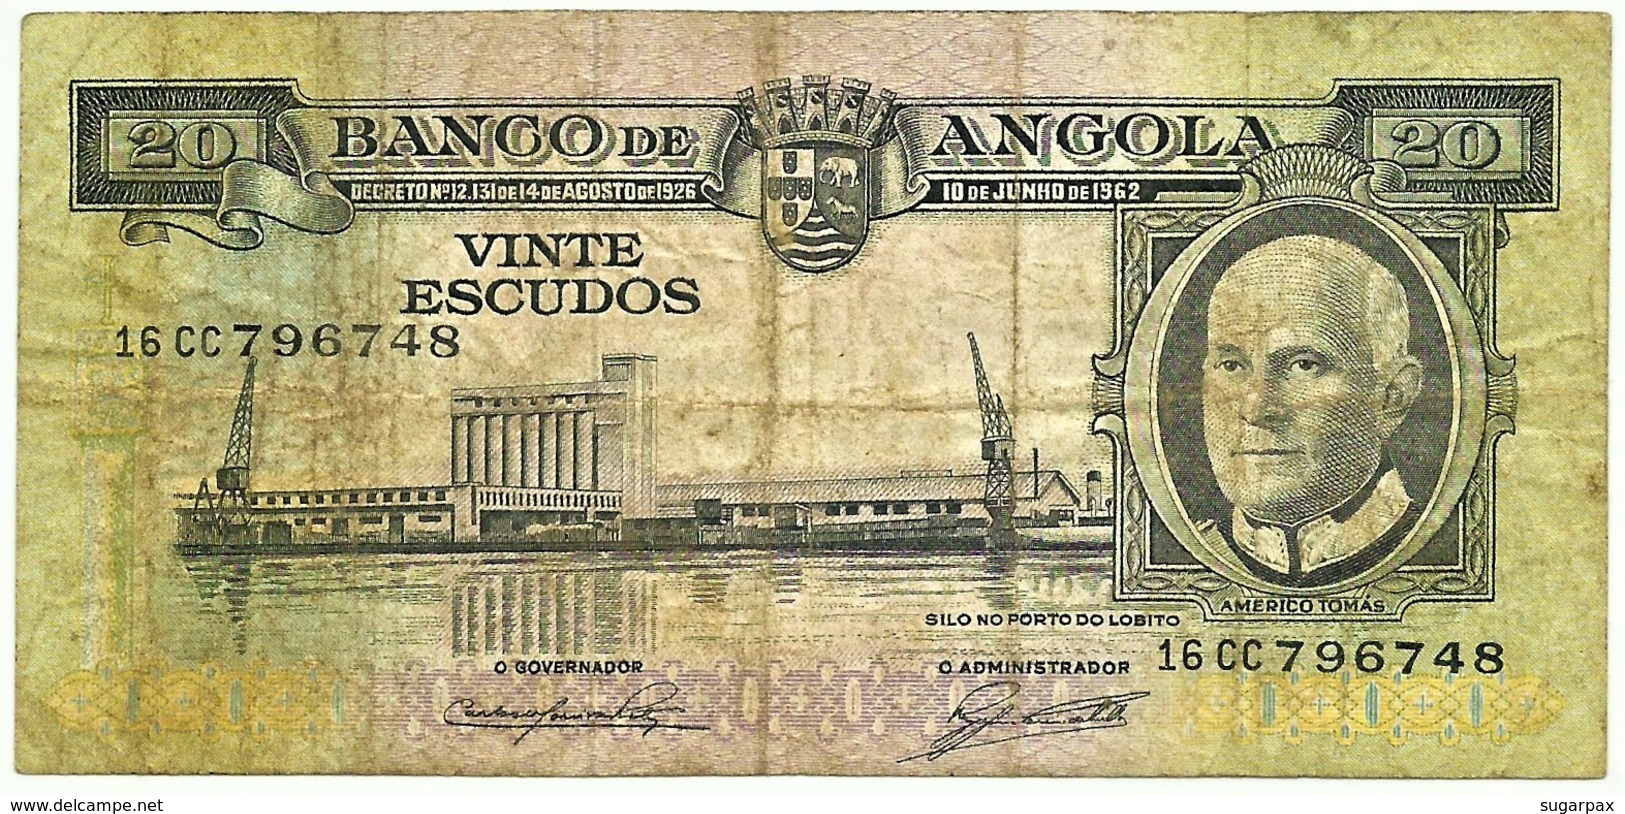 Angola - 20 Escudos - 10.06.1962 - Pick 92 - Série 16 CC - Américo Tomás - PORTUGAL - Angola